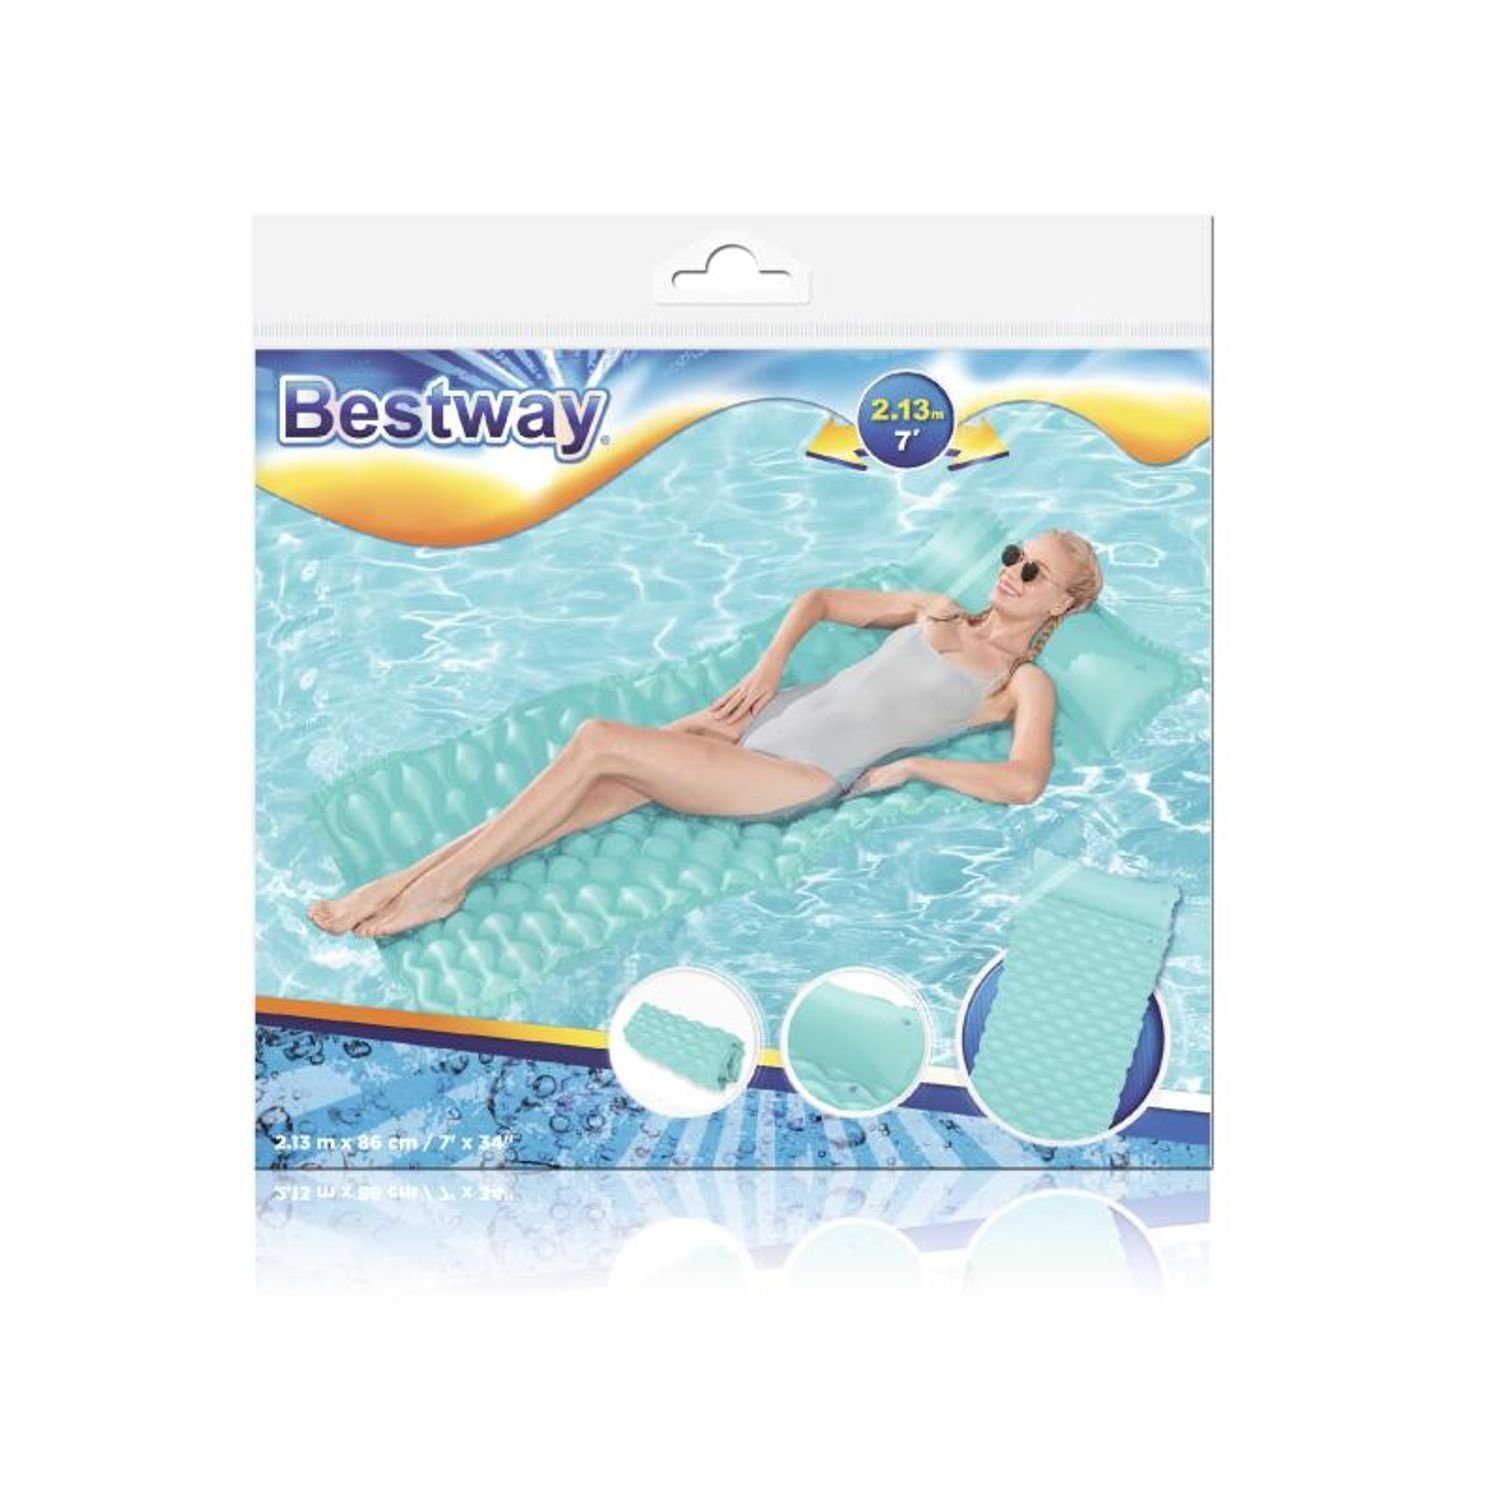 213x86cm Strand Pool Luftmatratze Aufrollbare Sommer Bestway Luftmatratze Bestway Badespaß